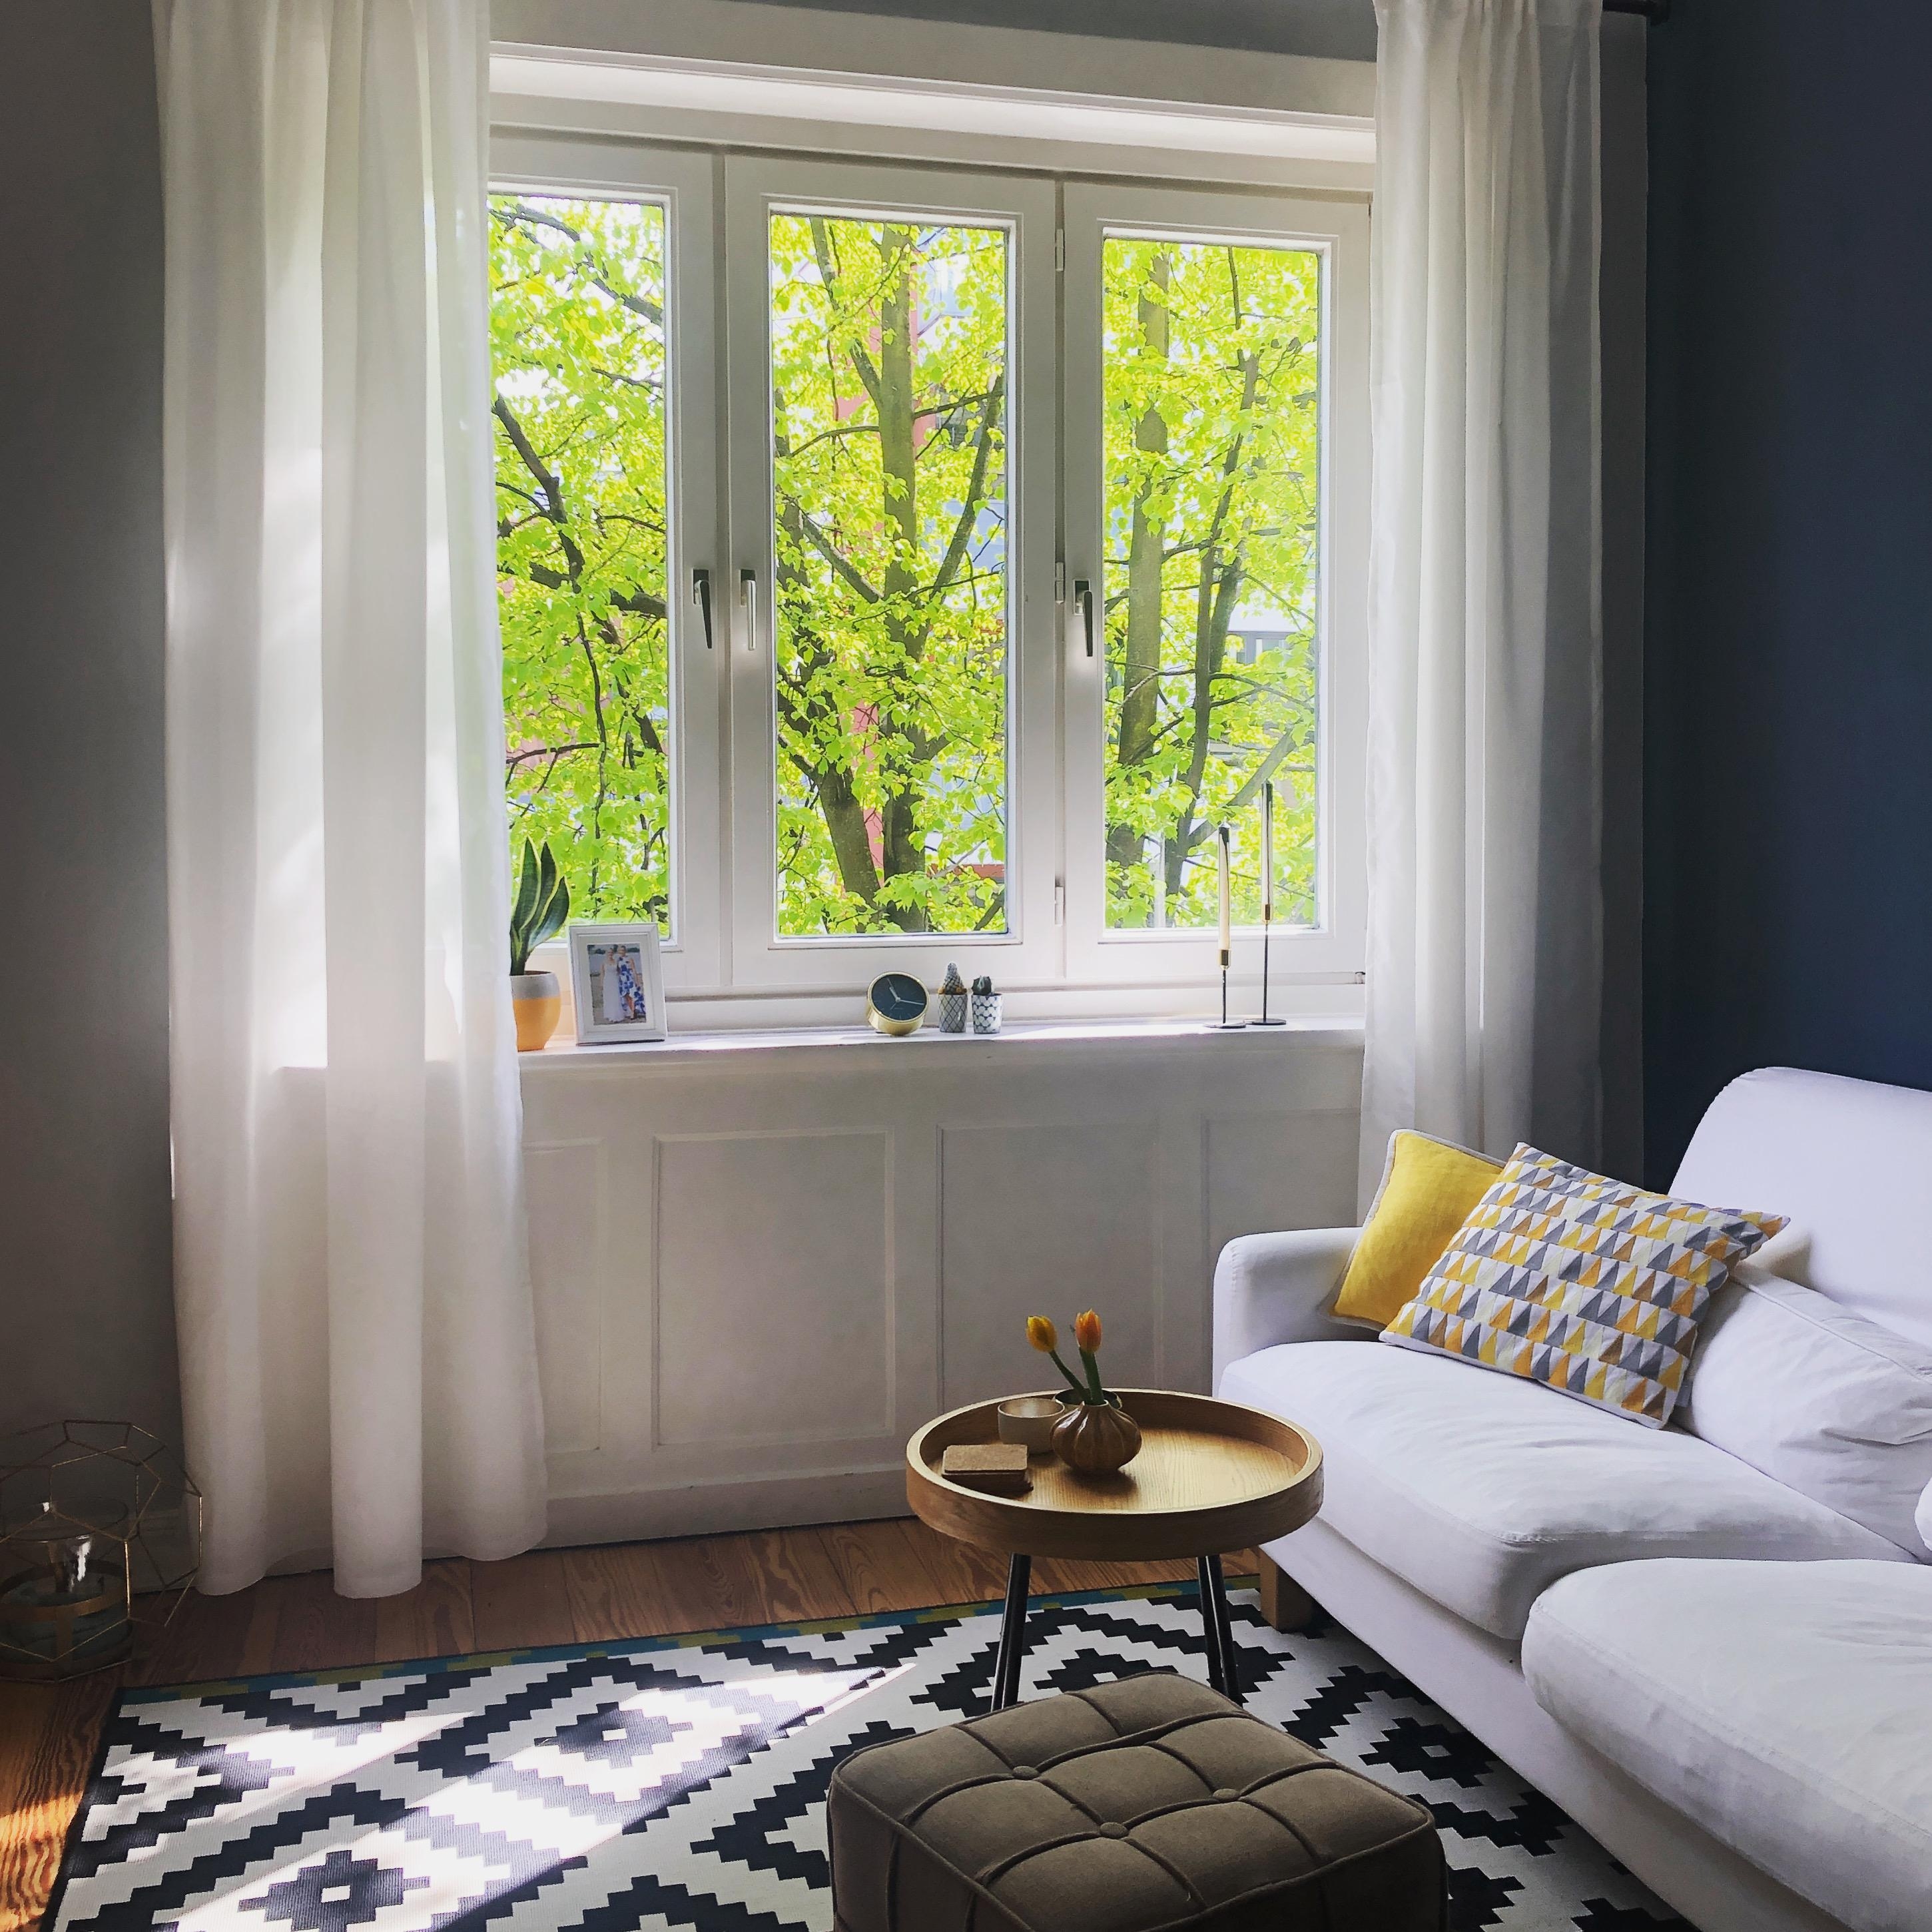 #neuhier #wohnzimmer #altbau #sonnenschein #frühlingvormfenster